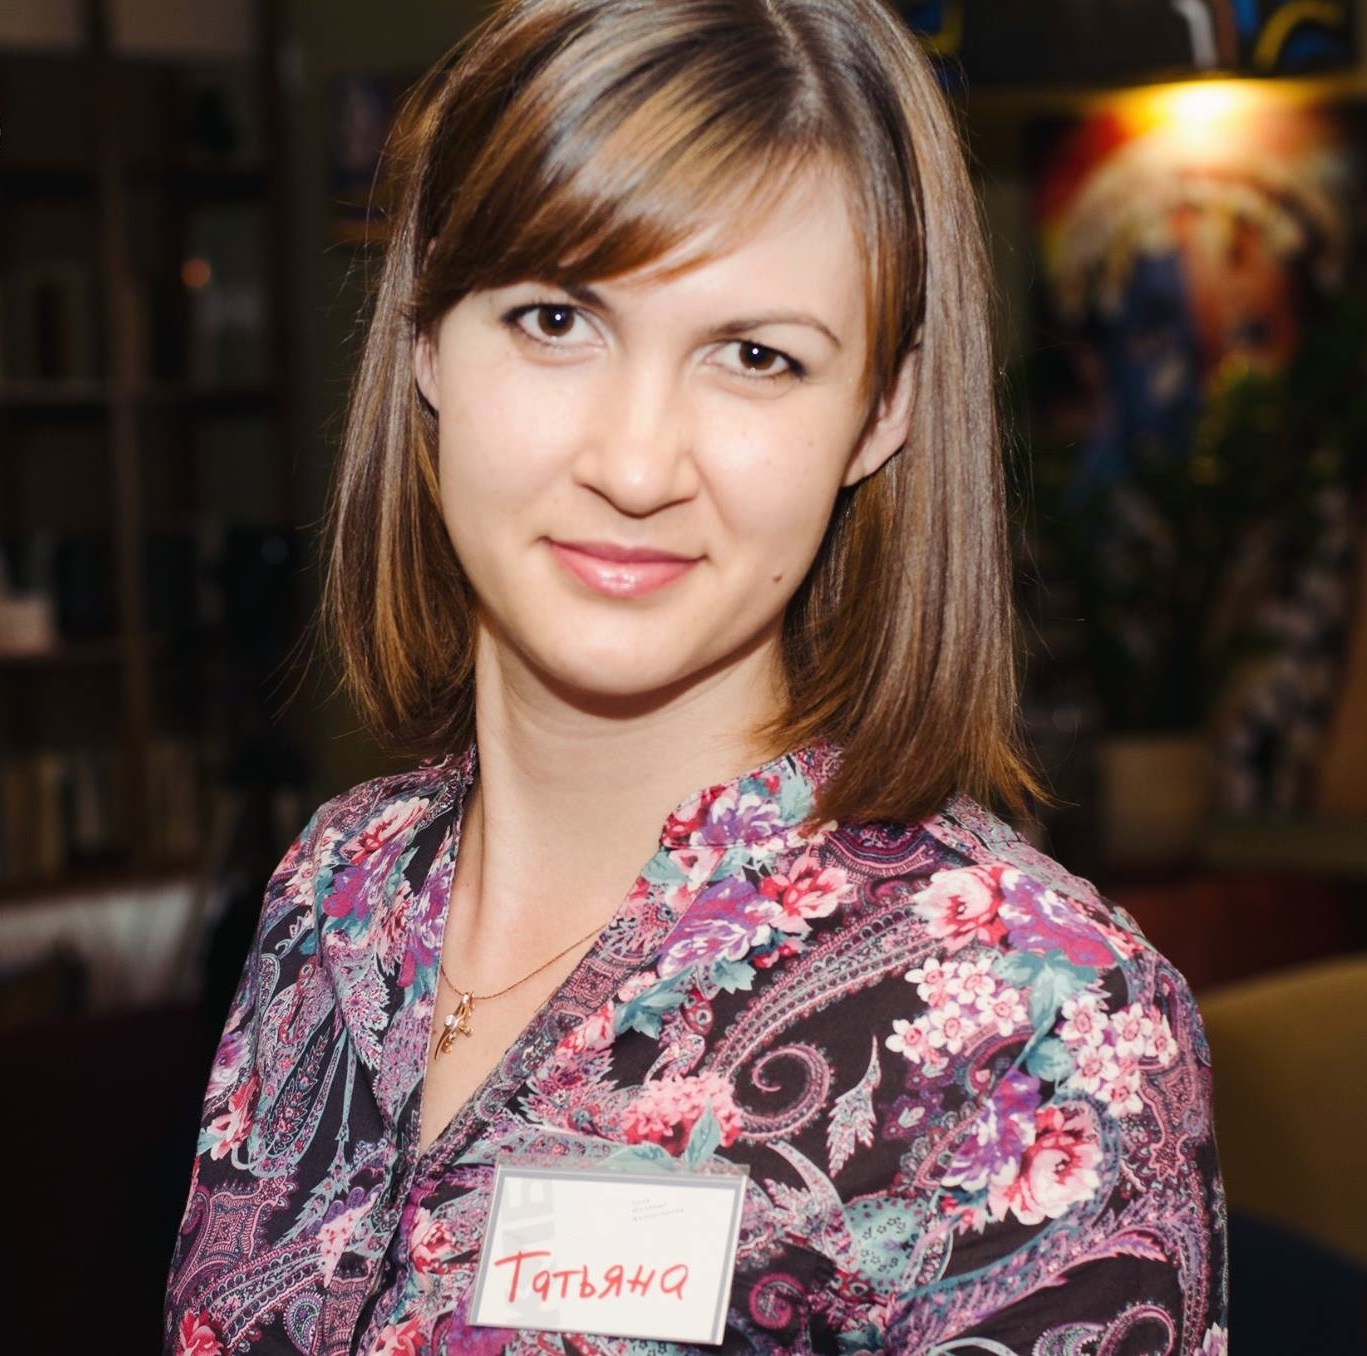 Tatiana Novacova